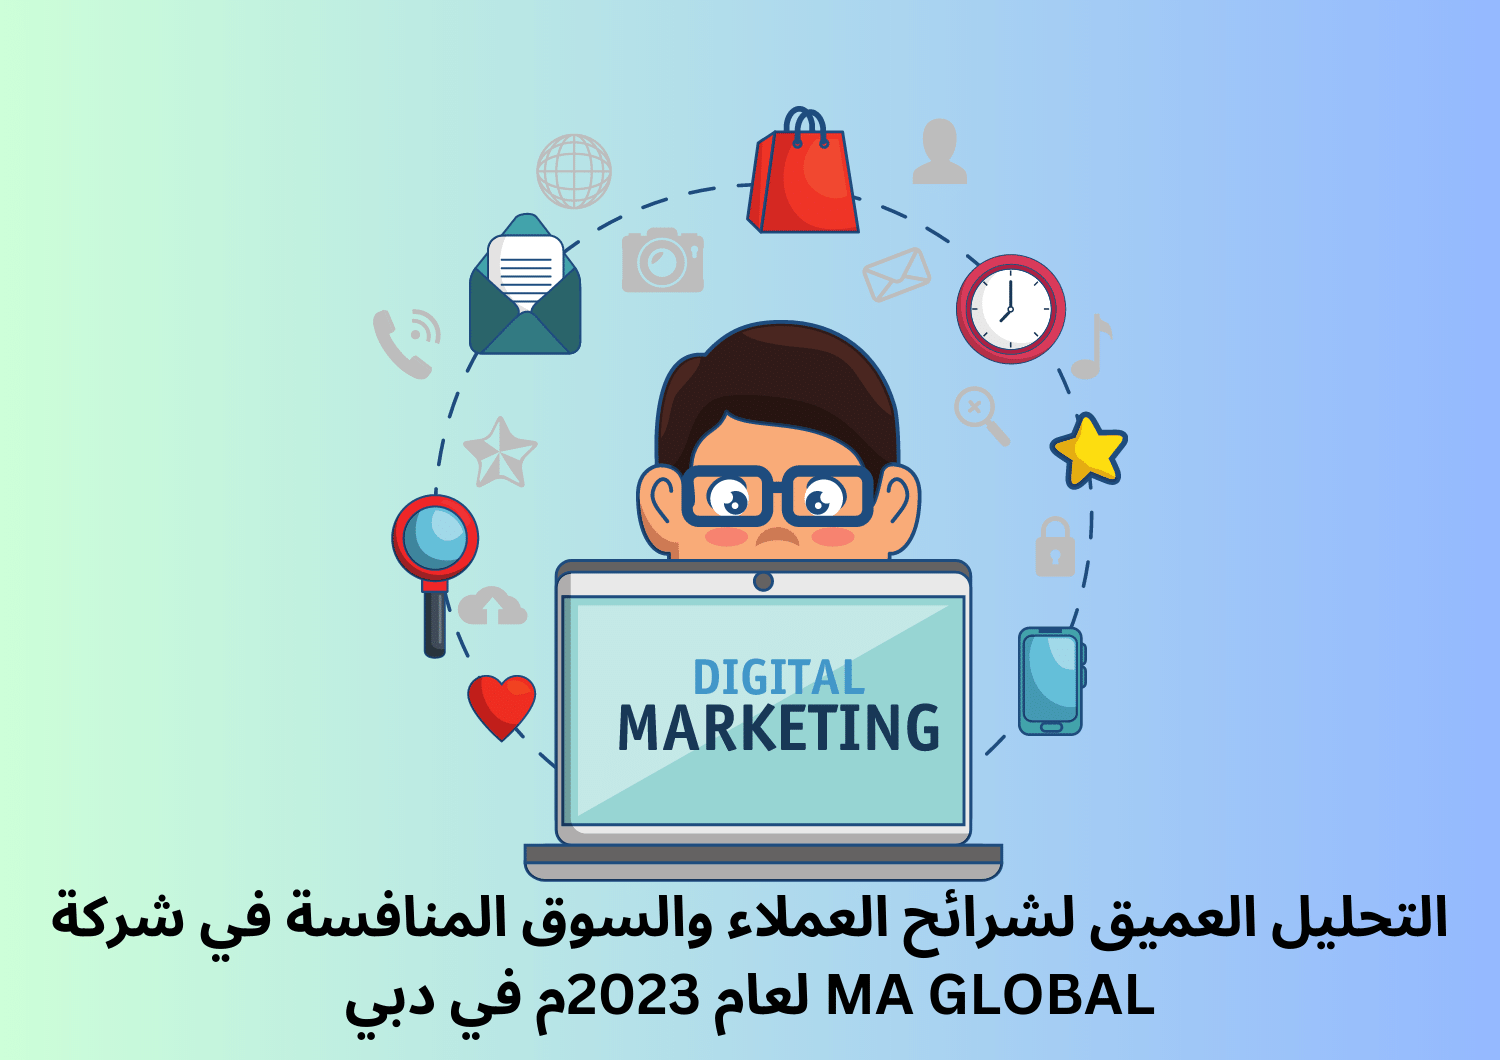 التحليل العميق لشرائح العملاء والسوق المنافسة في شركة MA GLOBAL لعام 2023م في دبي